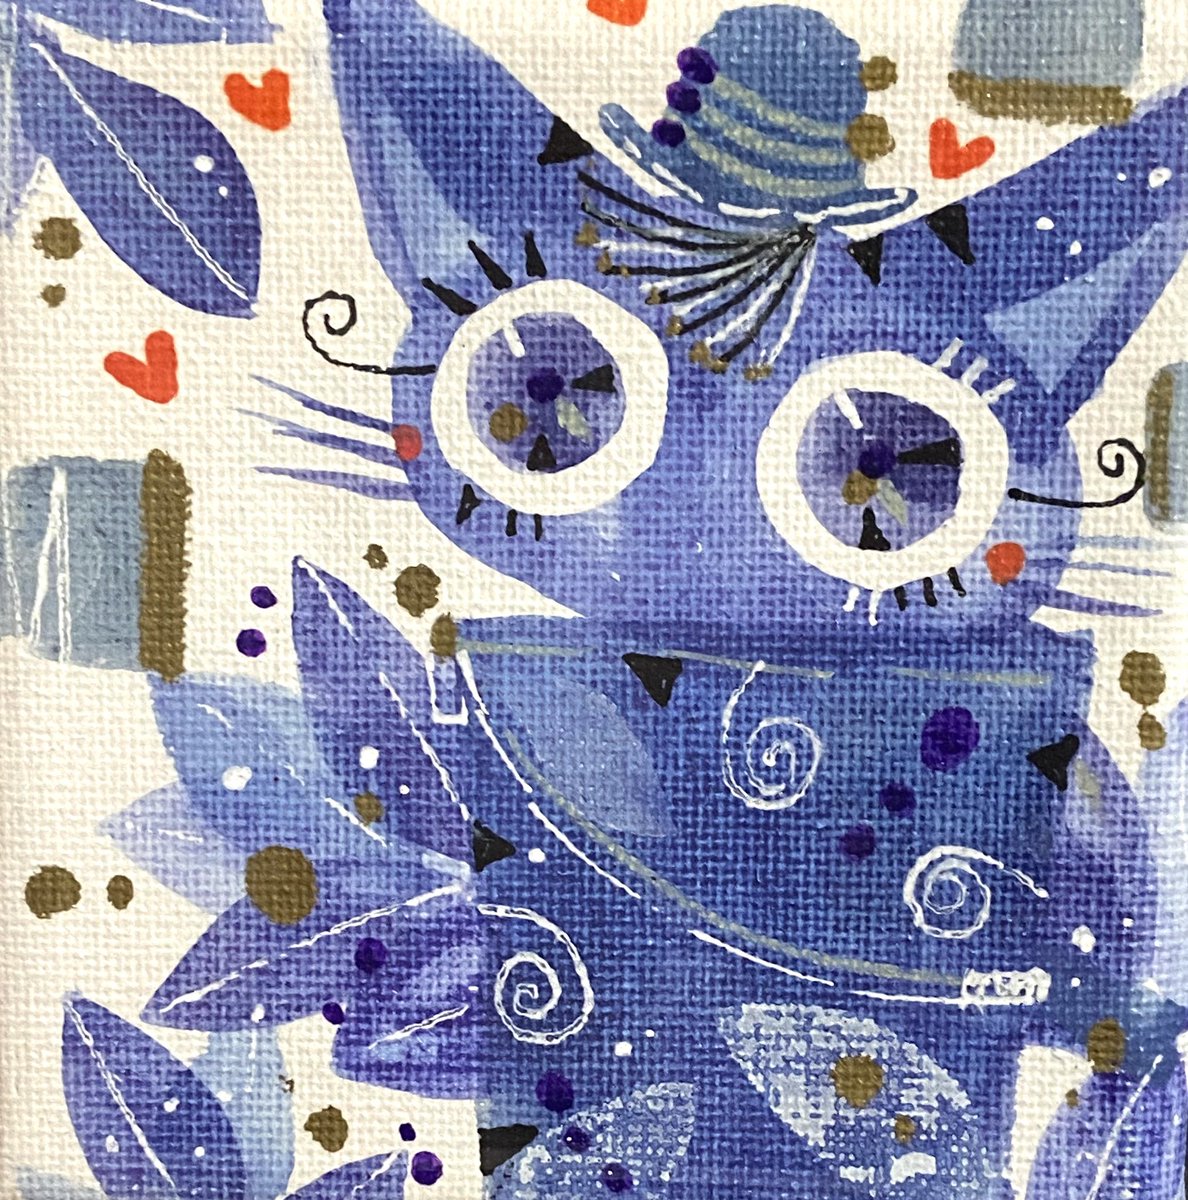 「【通販お知らせ】今週末7/14日夜を目安に、boothにて、青色系ミニ原画とまだ」|ほんだ猫 (不思議風景と猫を描くぶるべり)のイラスト